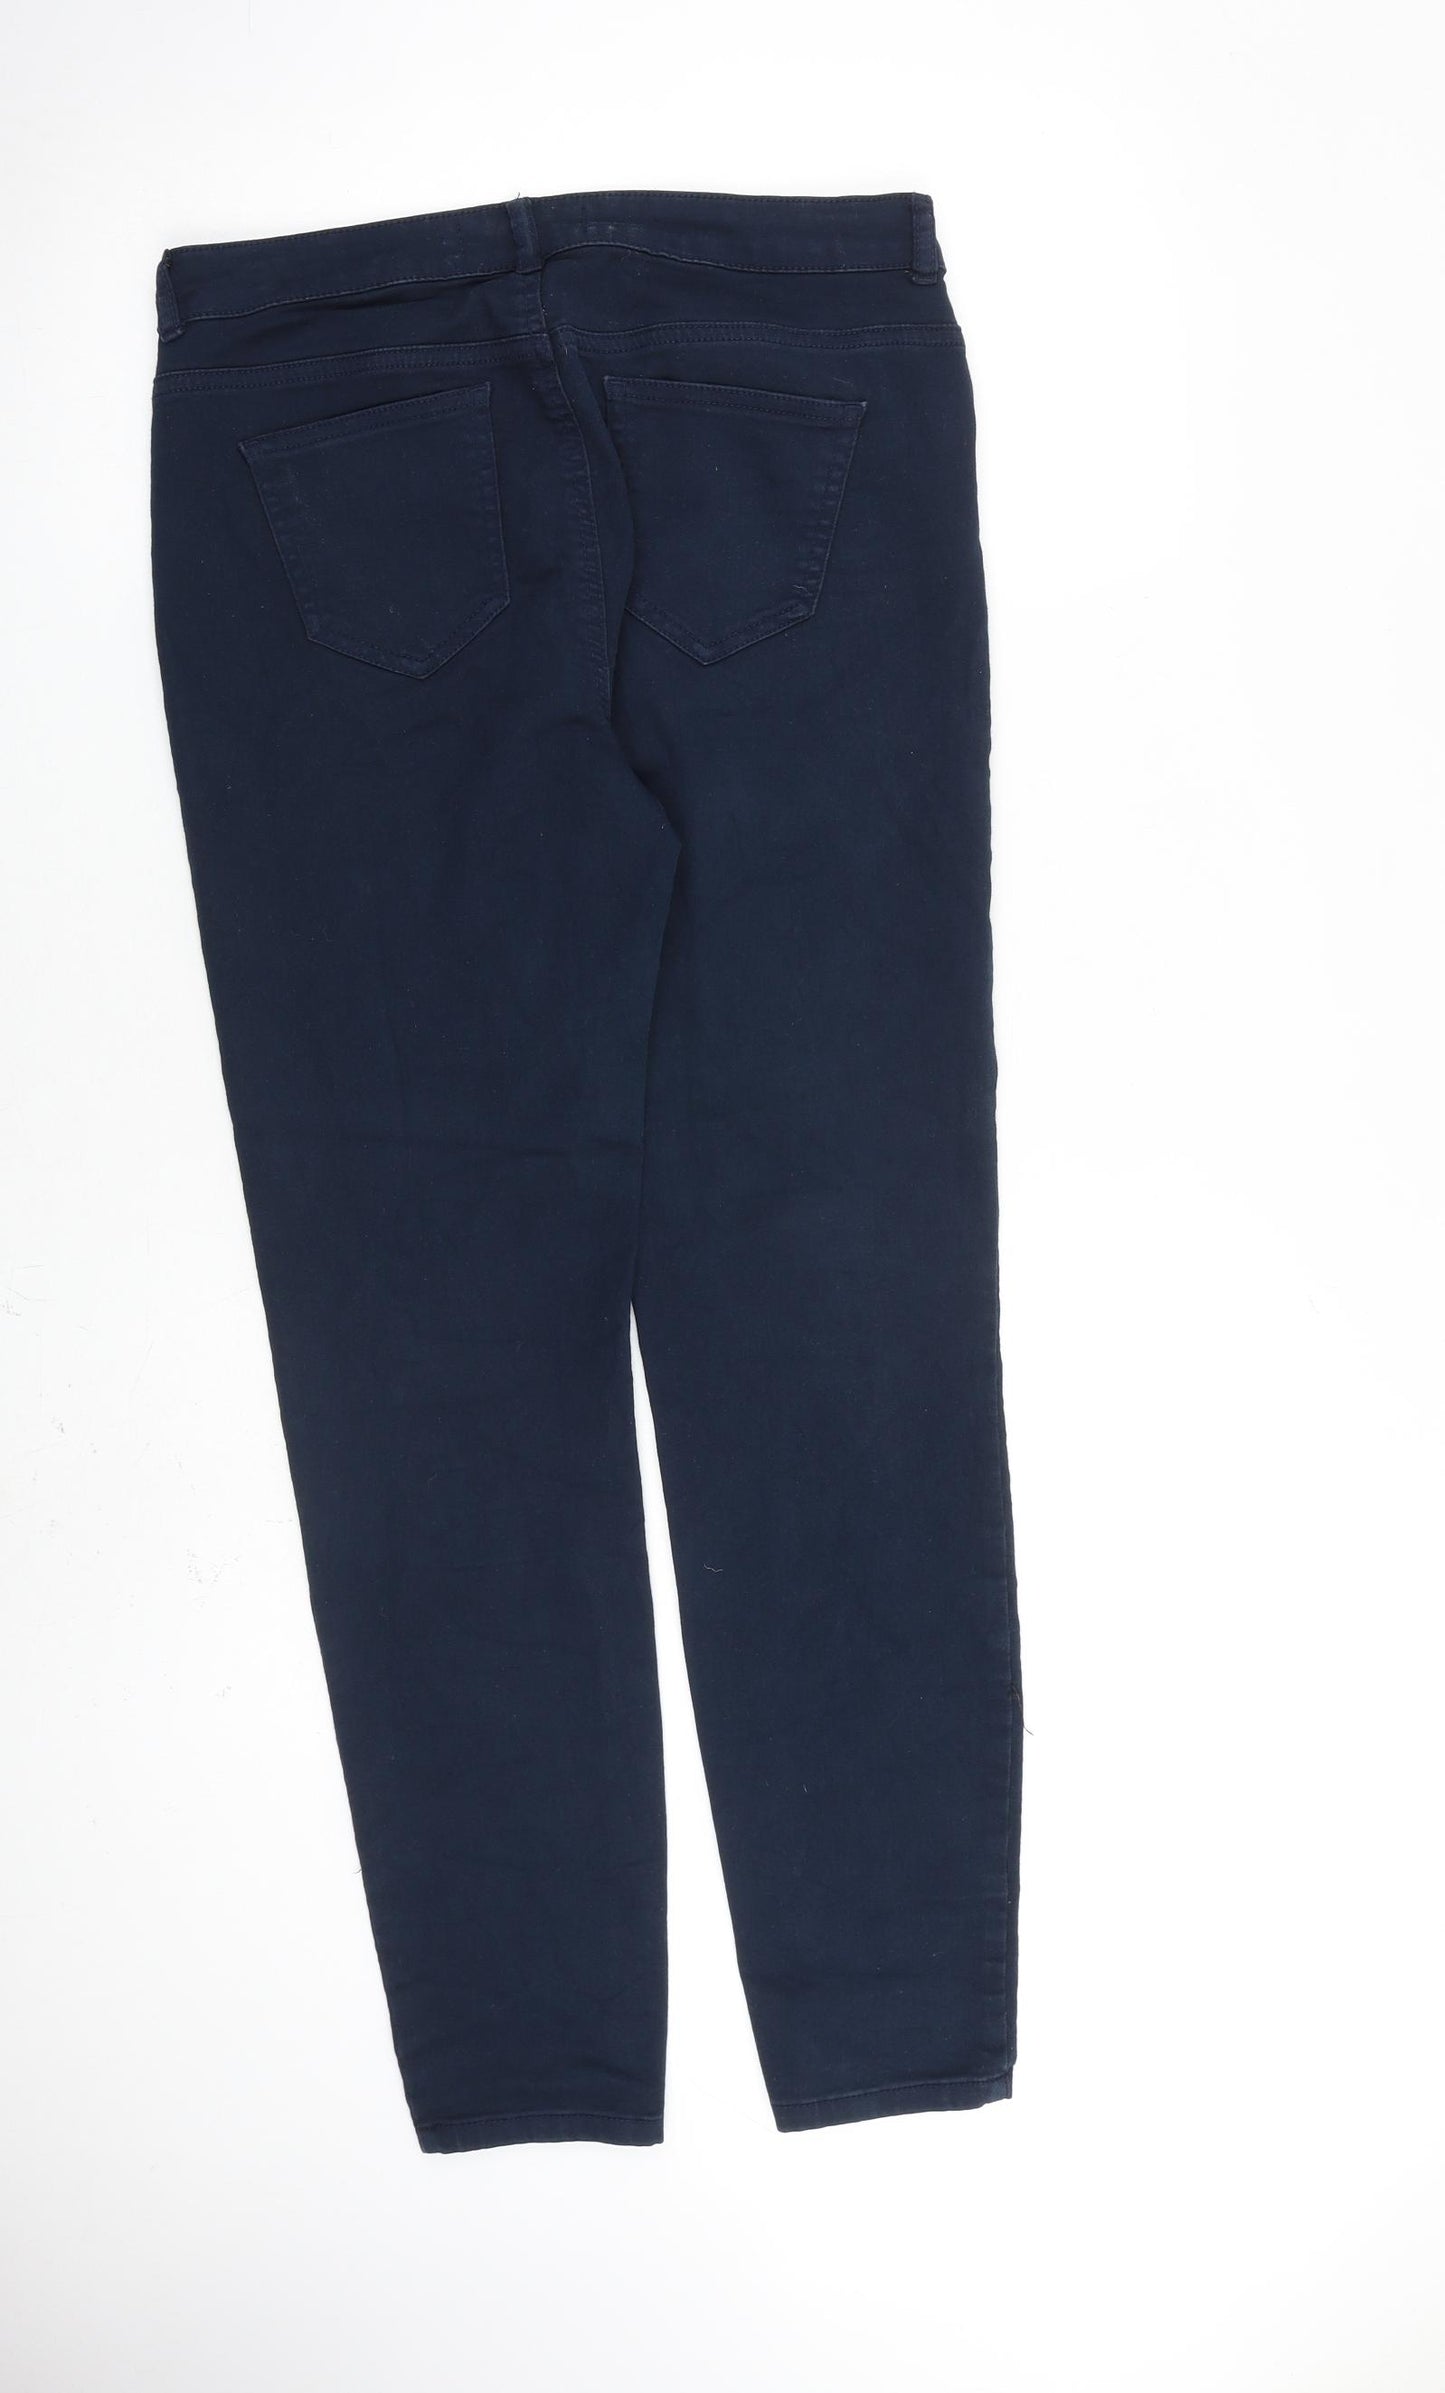 Wallis Womens Blue Cotton Skinny Jeans Size 12 L29 in Slim Zip